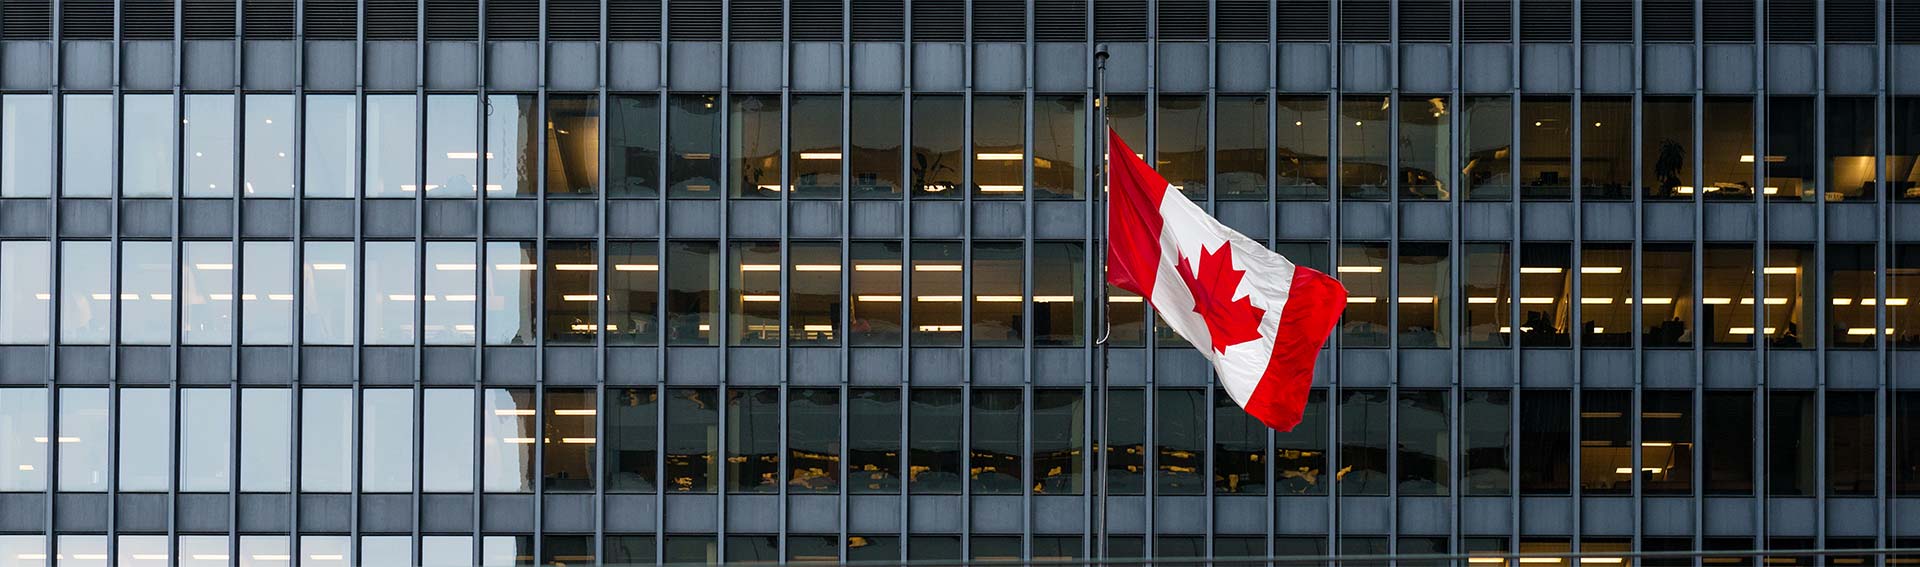 Vue d’ensemble : Élections canadiennes et marchés boursiers